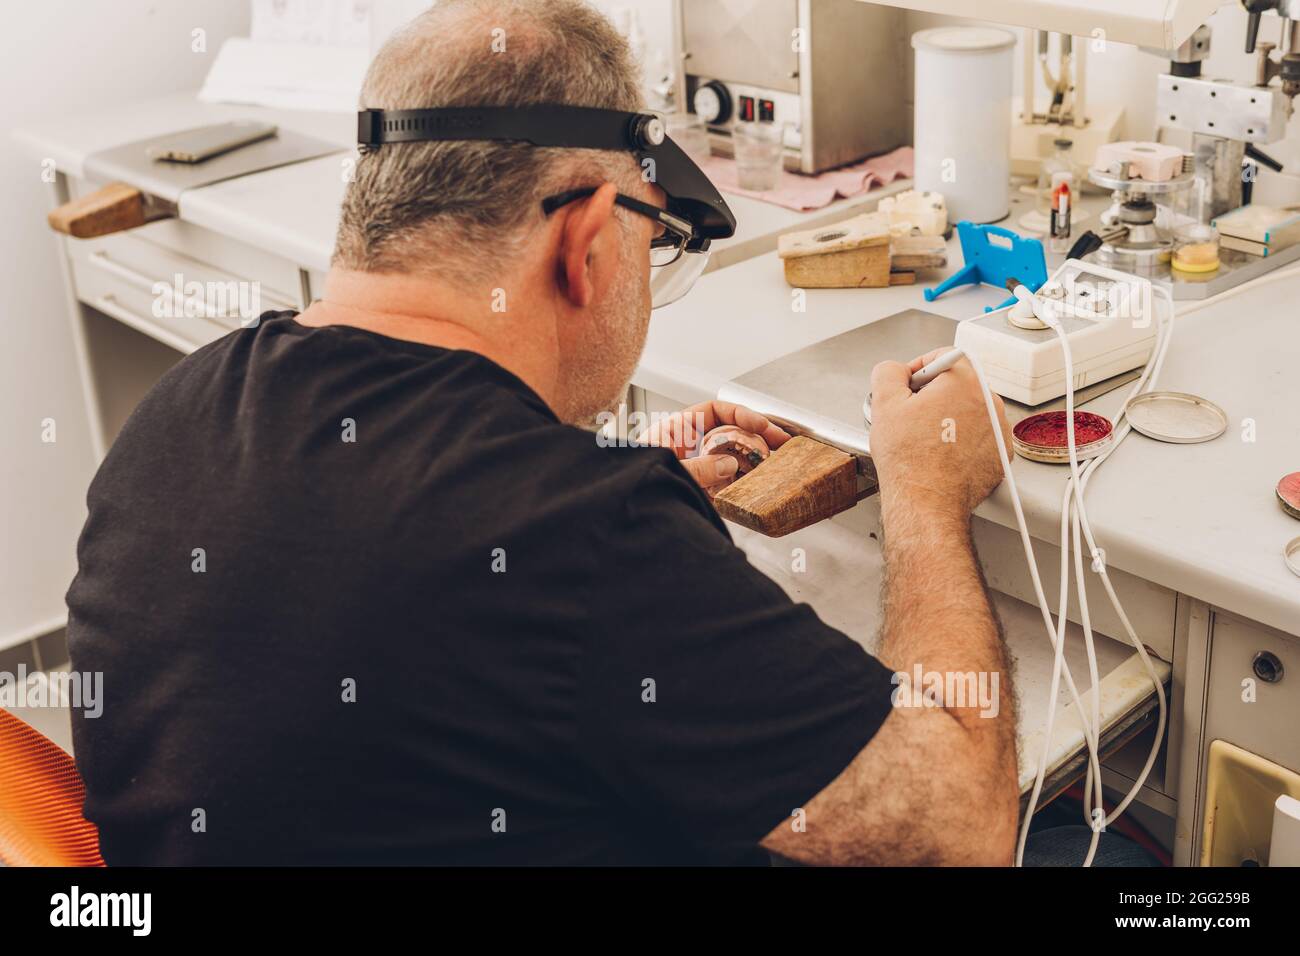 Mann, der in einem Zahnlabor sitzt, das sich auf professionelle Knochenzahnheilkunde spezialisiert hat und Wachs verwendet, um eine Zahnform zu Formen Stockfoto